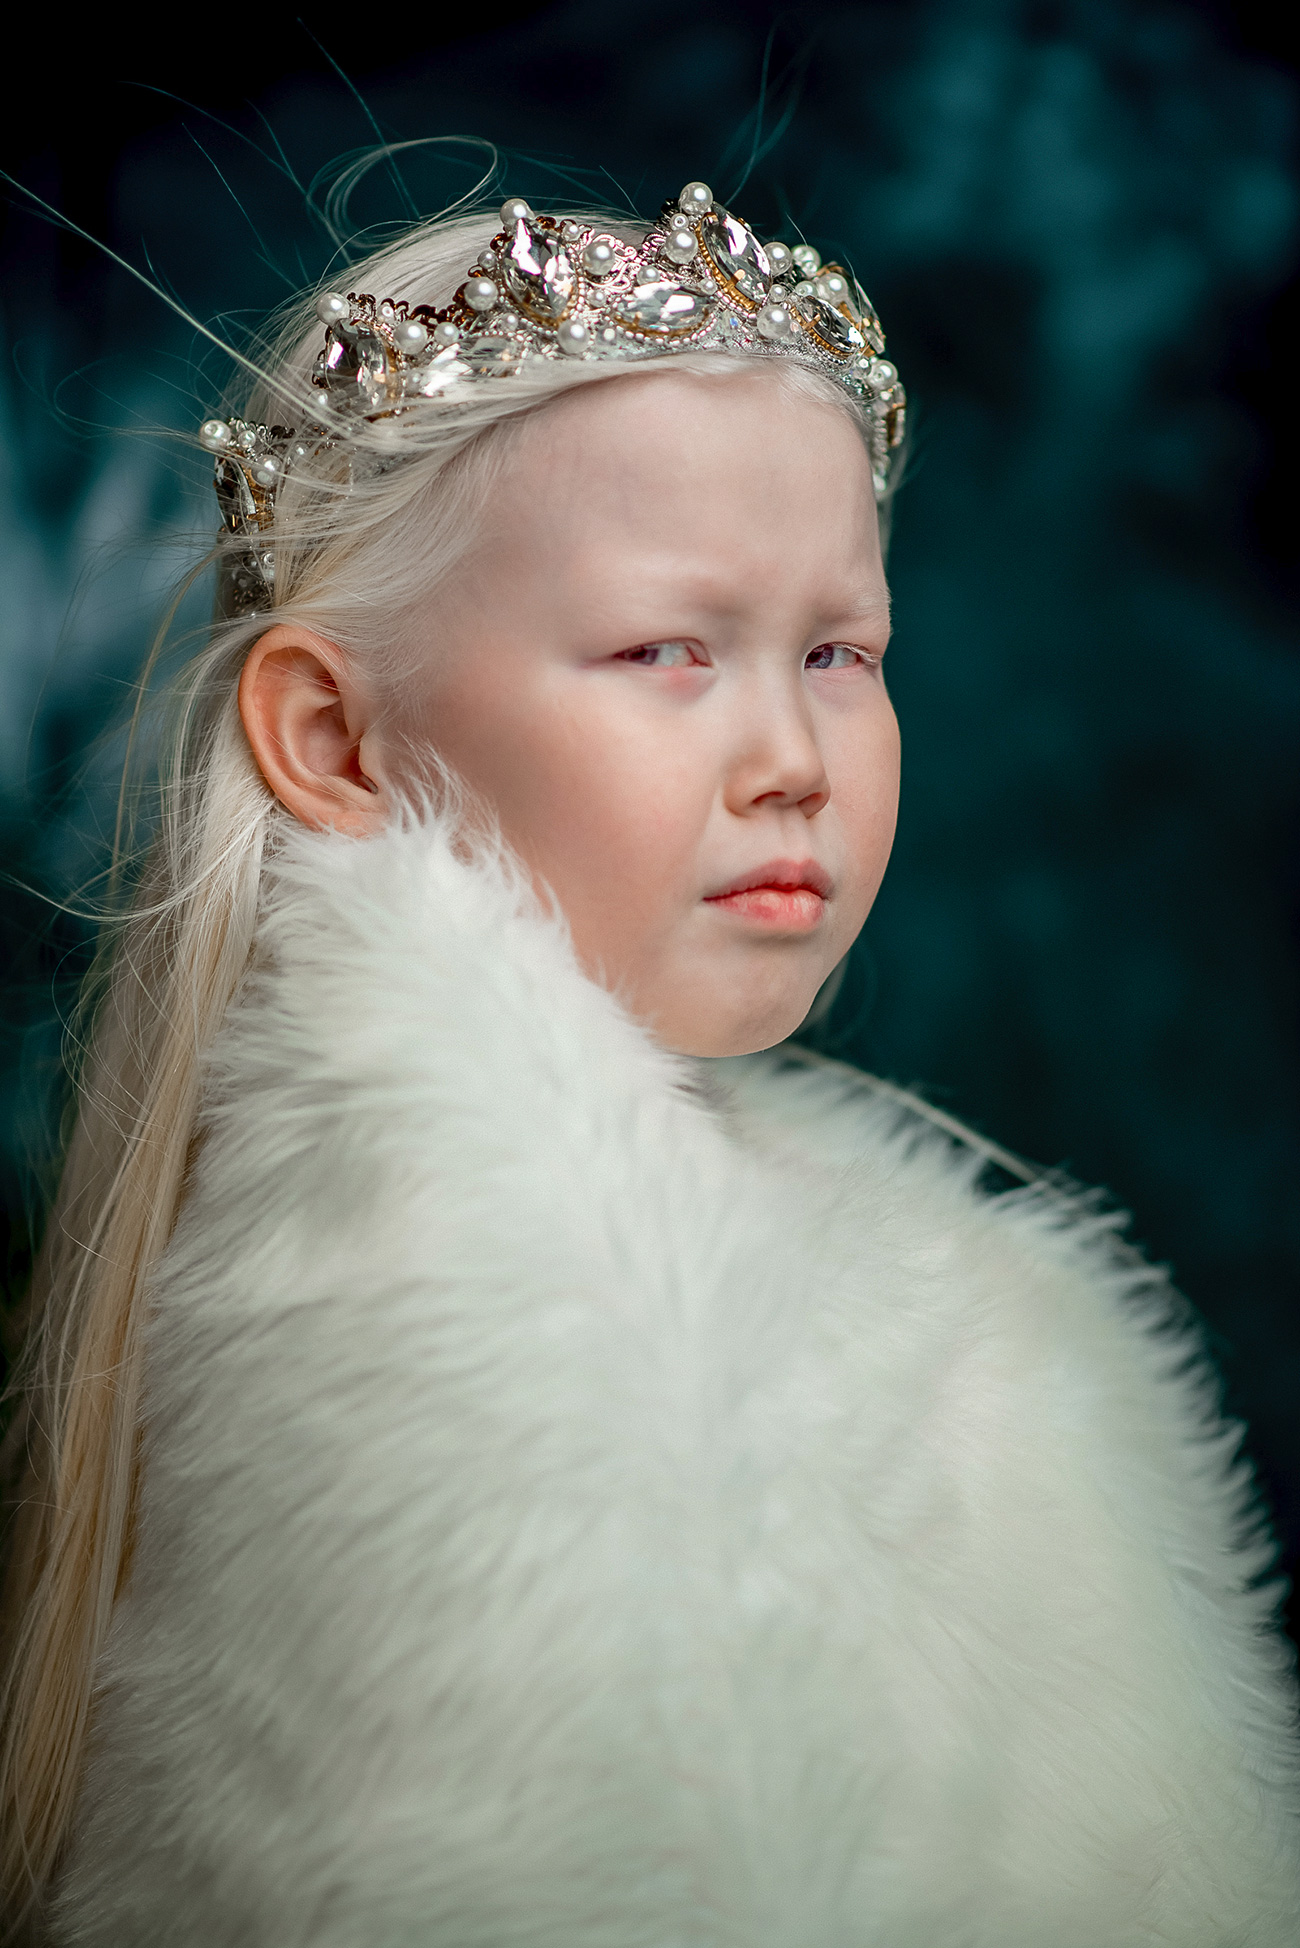 Nariyana è una giovane ragazza albina. La sua carnagione madreperla, gli occhi chiari e i capelli color neve la rendono una bellezza unica e rara per una regione, la Yakutia, dove le donne sono prevalentemente more e con la pelle più scura